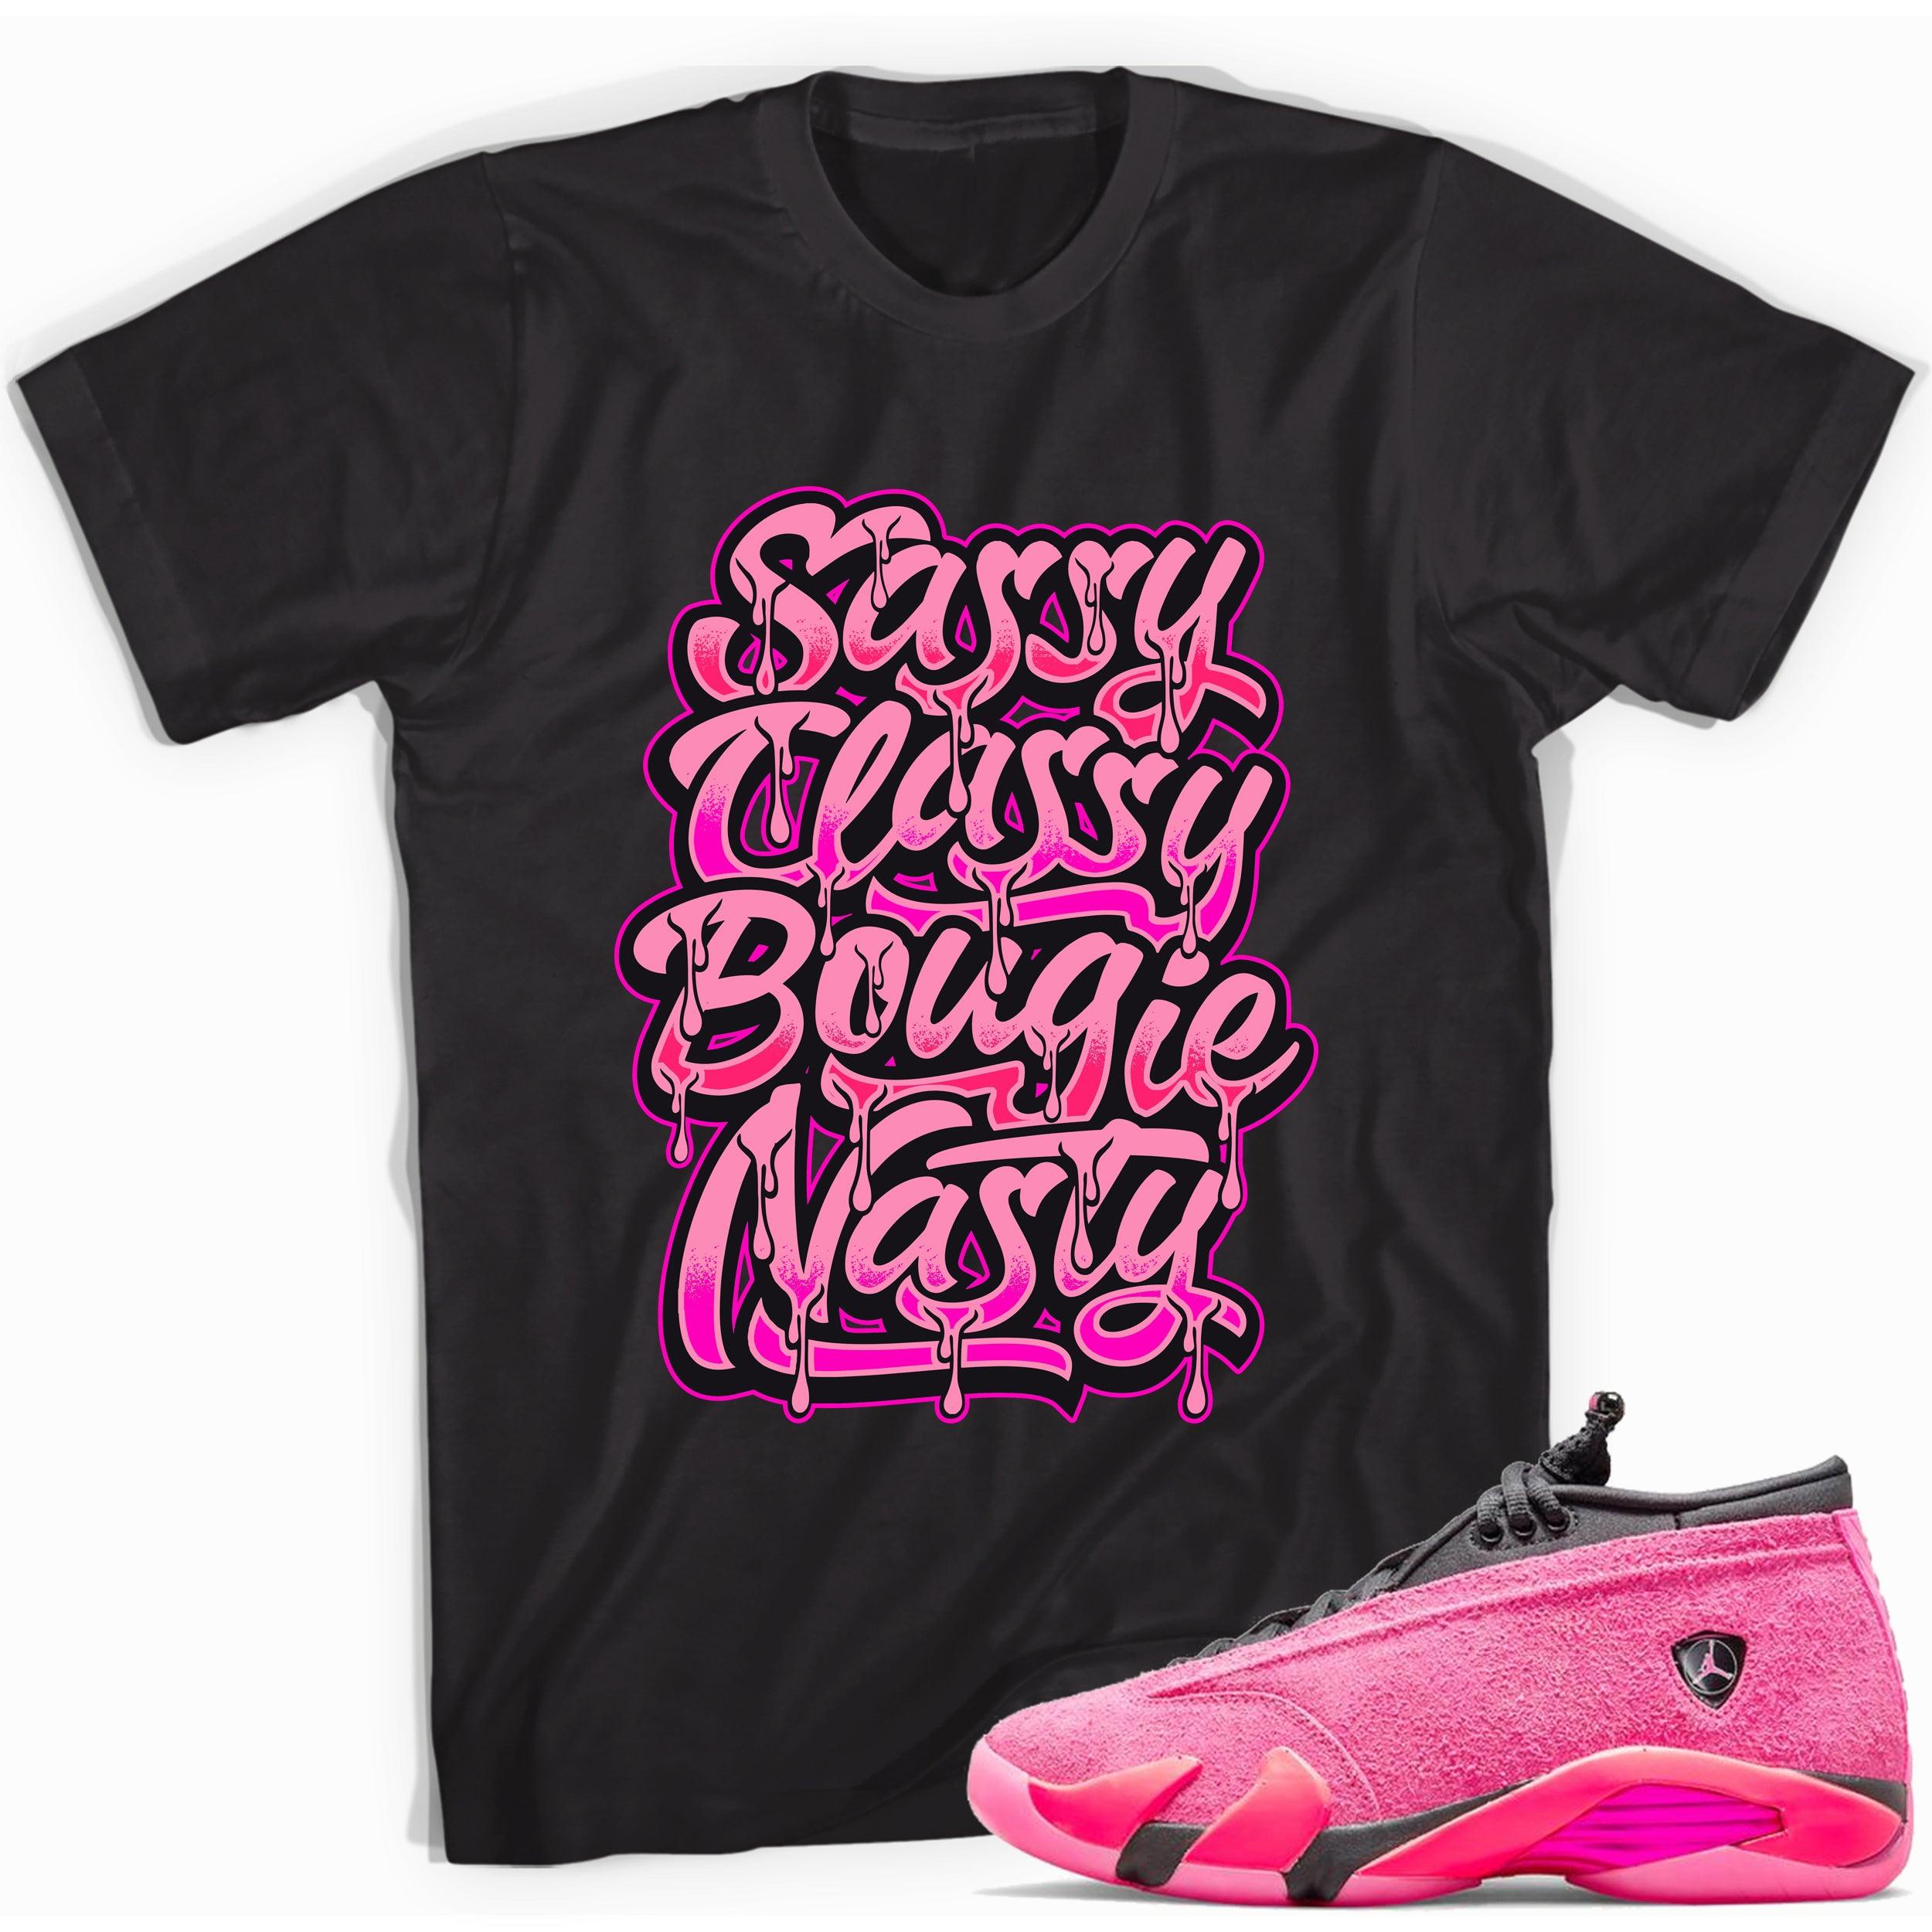 Black Sassy Classy Shirt Jordan 14s Low Shocking Pink photo